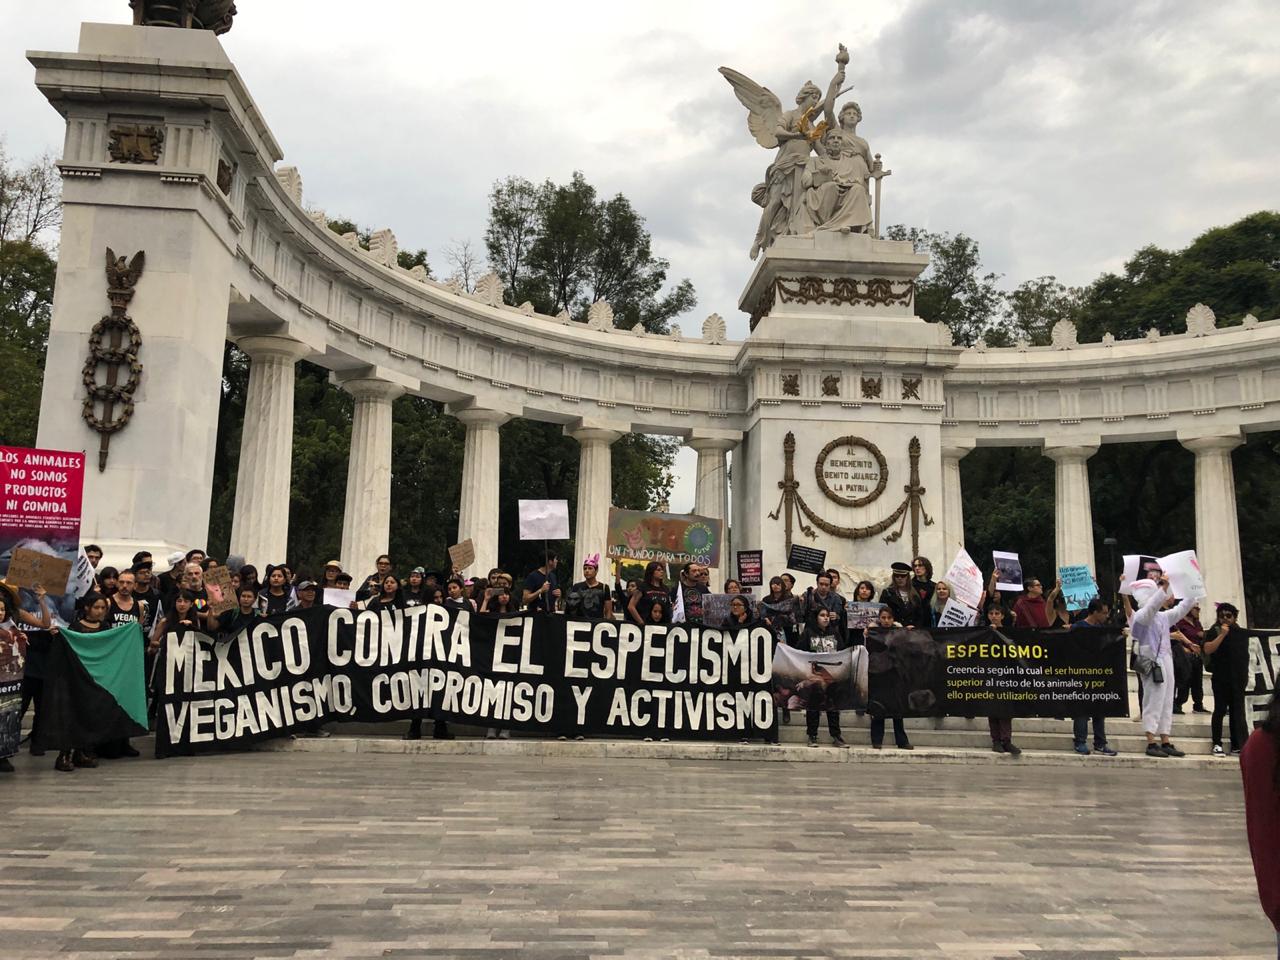 Marcha contra el especismo en México 2019